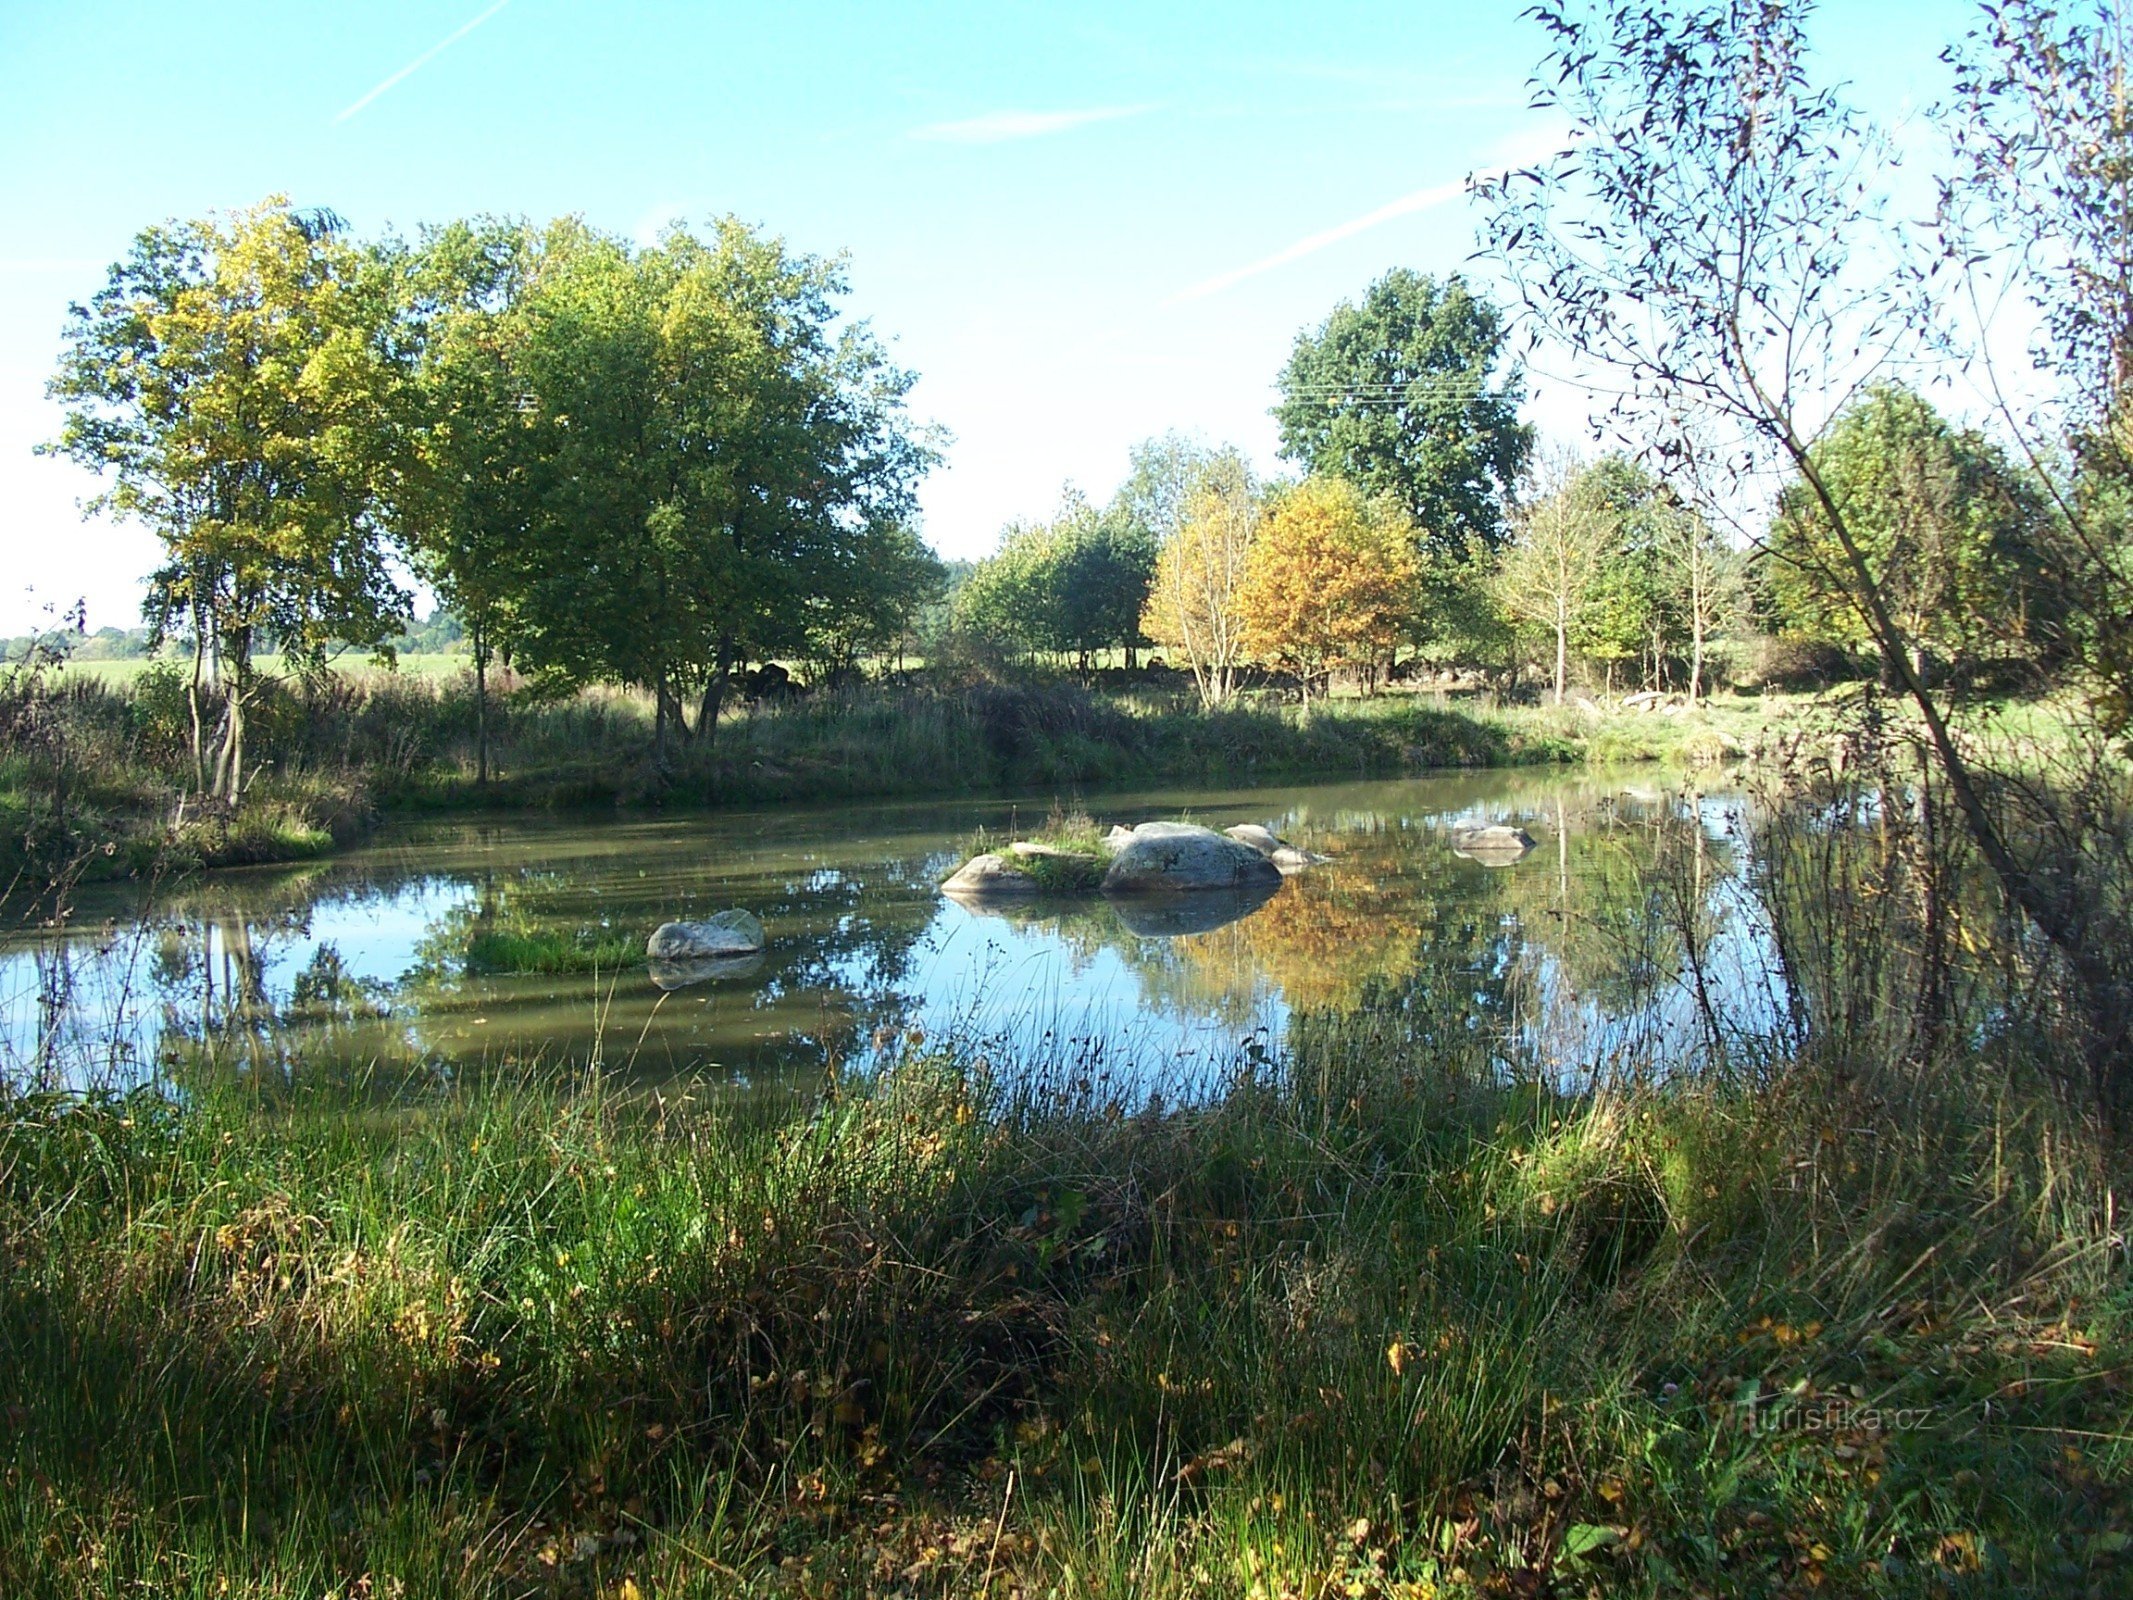 Milčice附近的一个小池塘